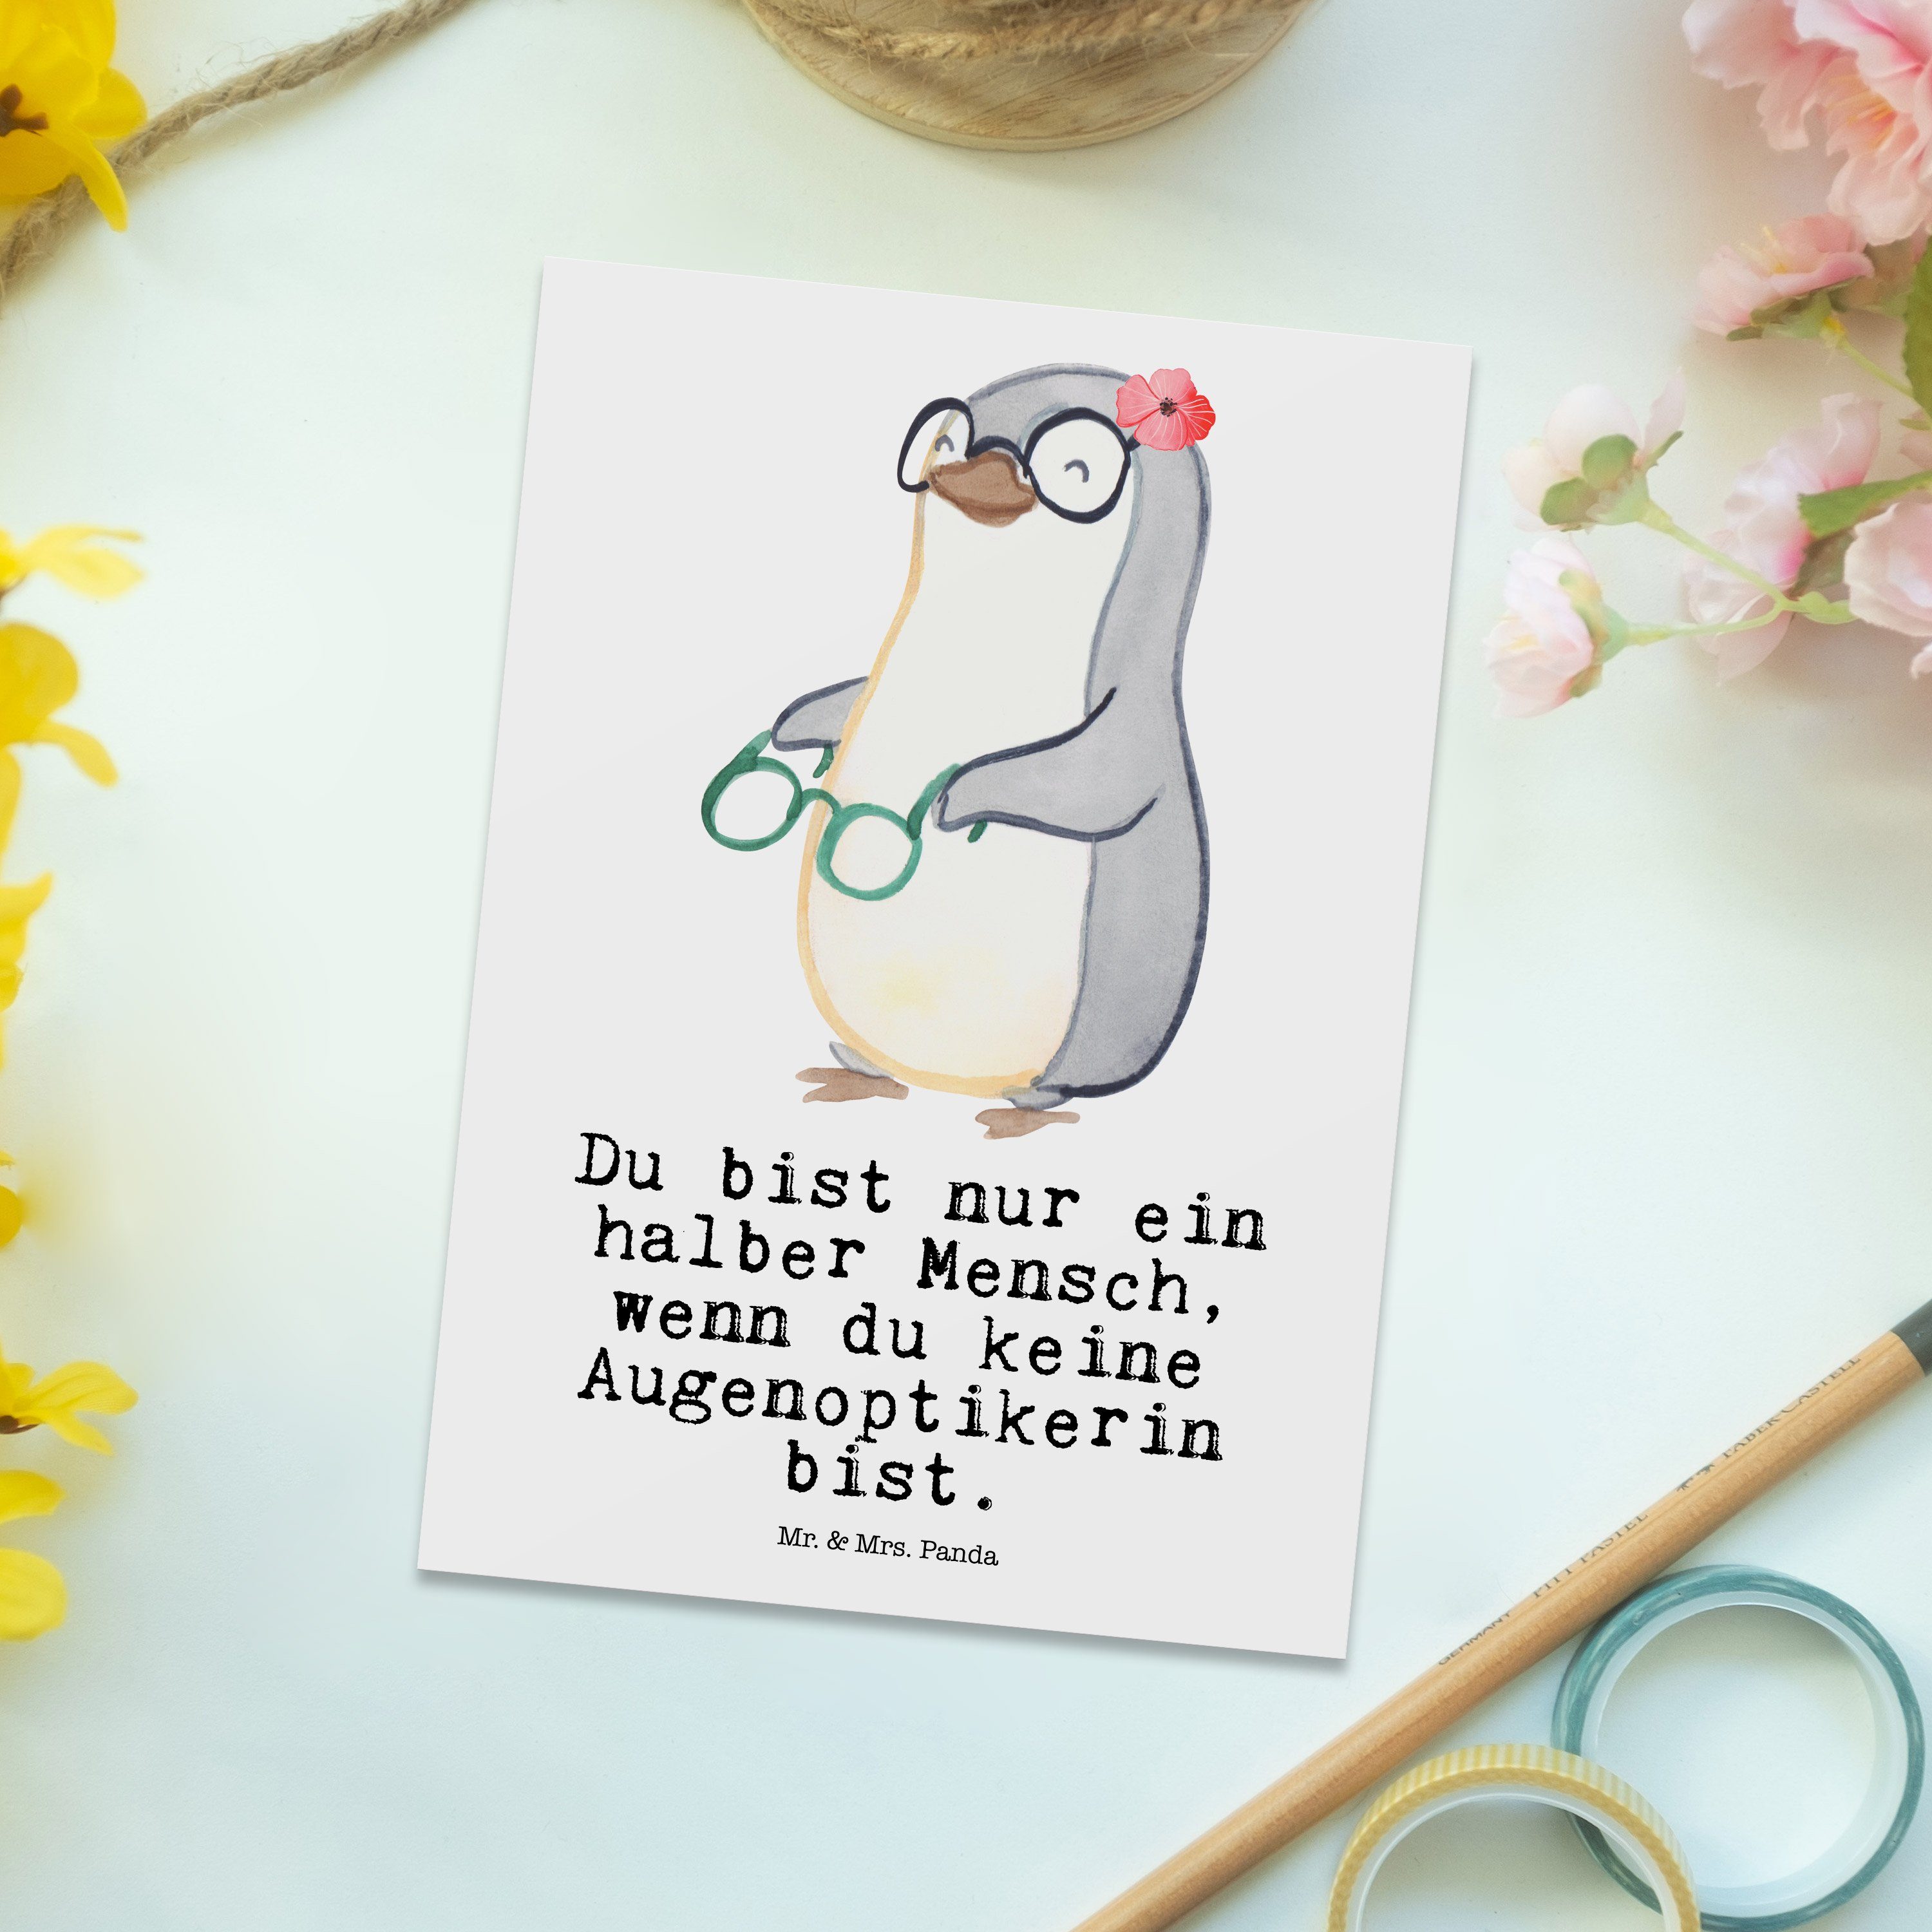 Mr. & Eröffn mit Mrs. Weiß Augenoptikerin Geschenk, Panda Postkarte - - Brillenverkäuferin, Herz